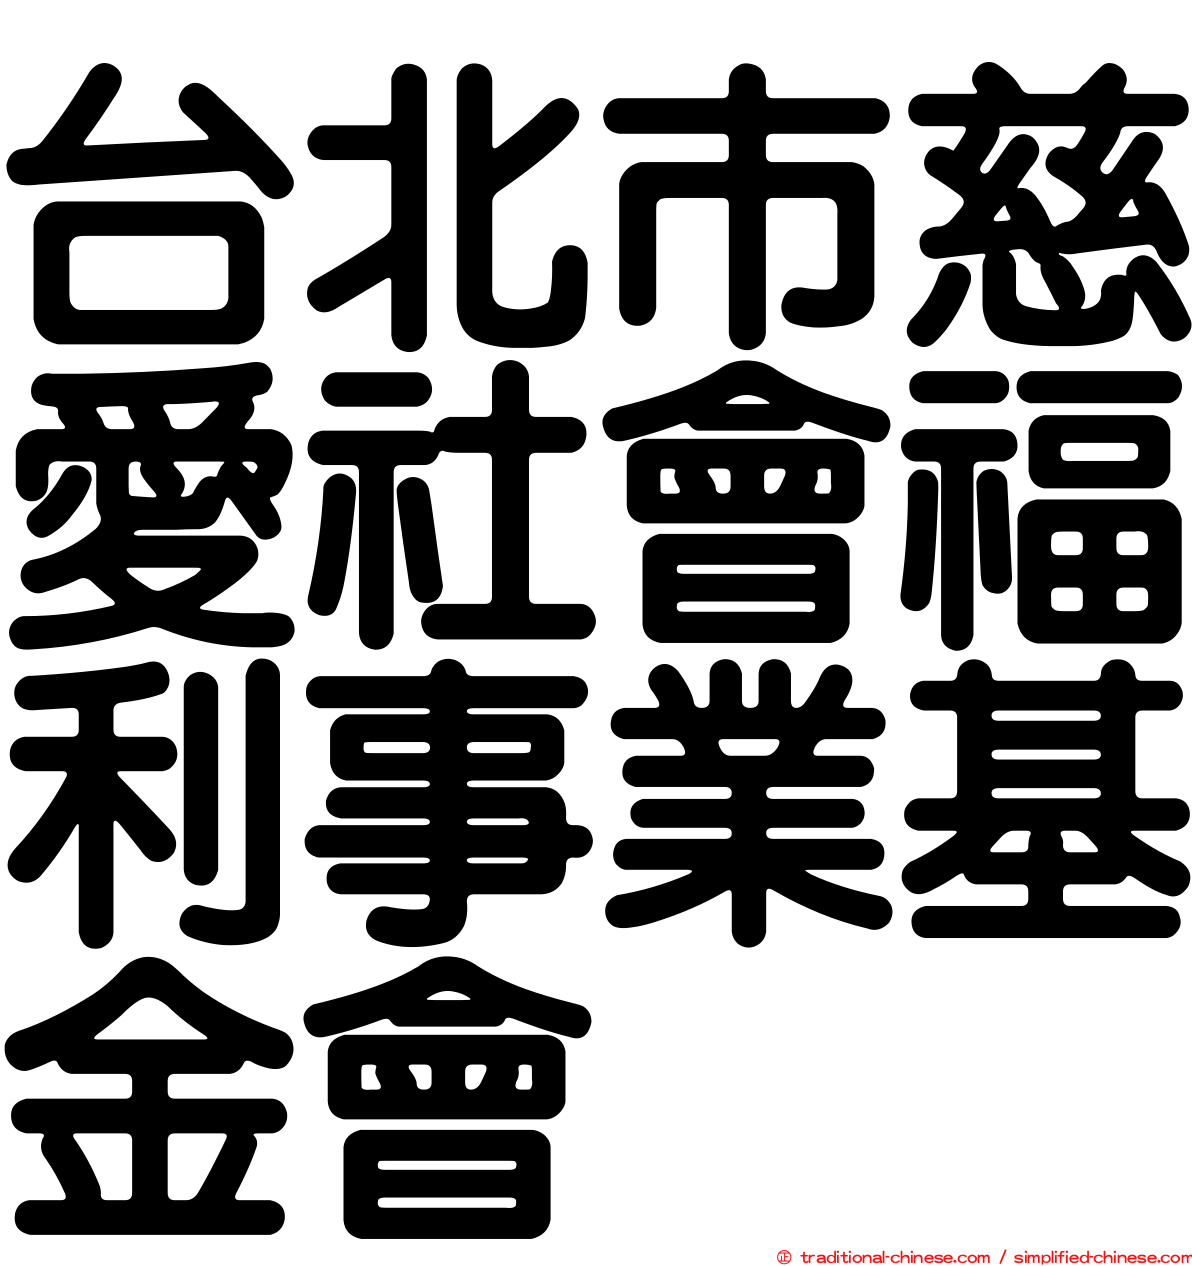 台北巿慈愛社會福利事業基金會